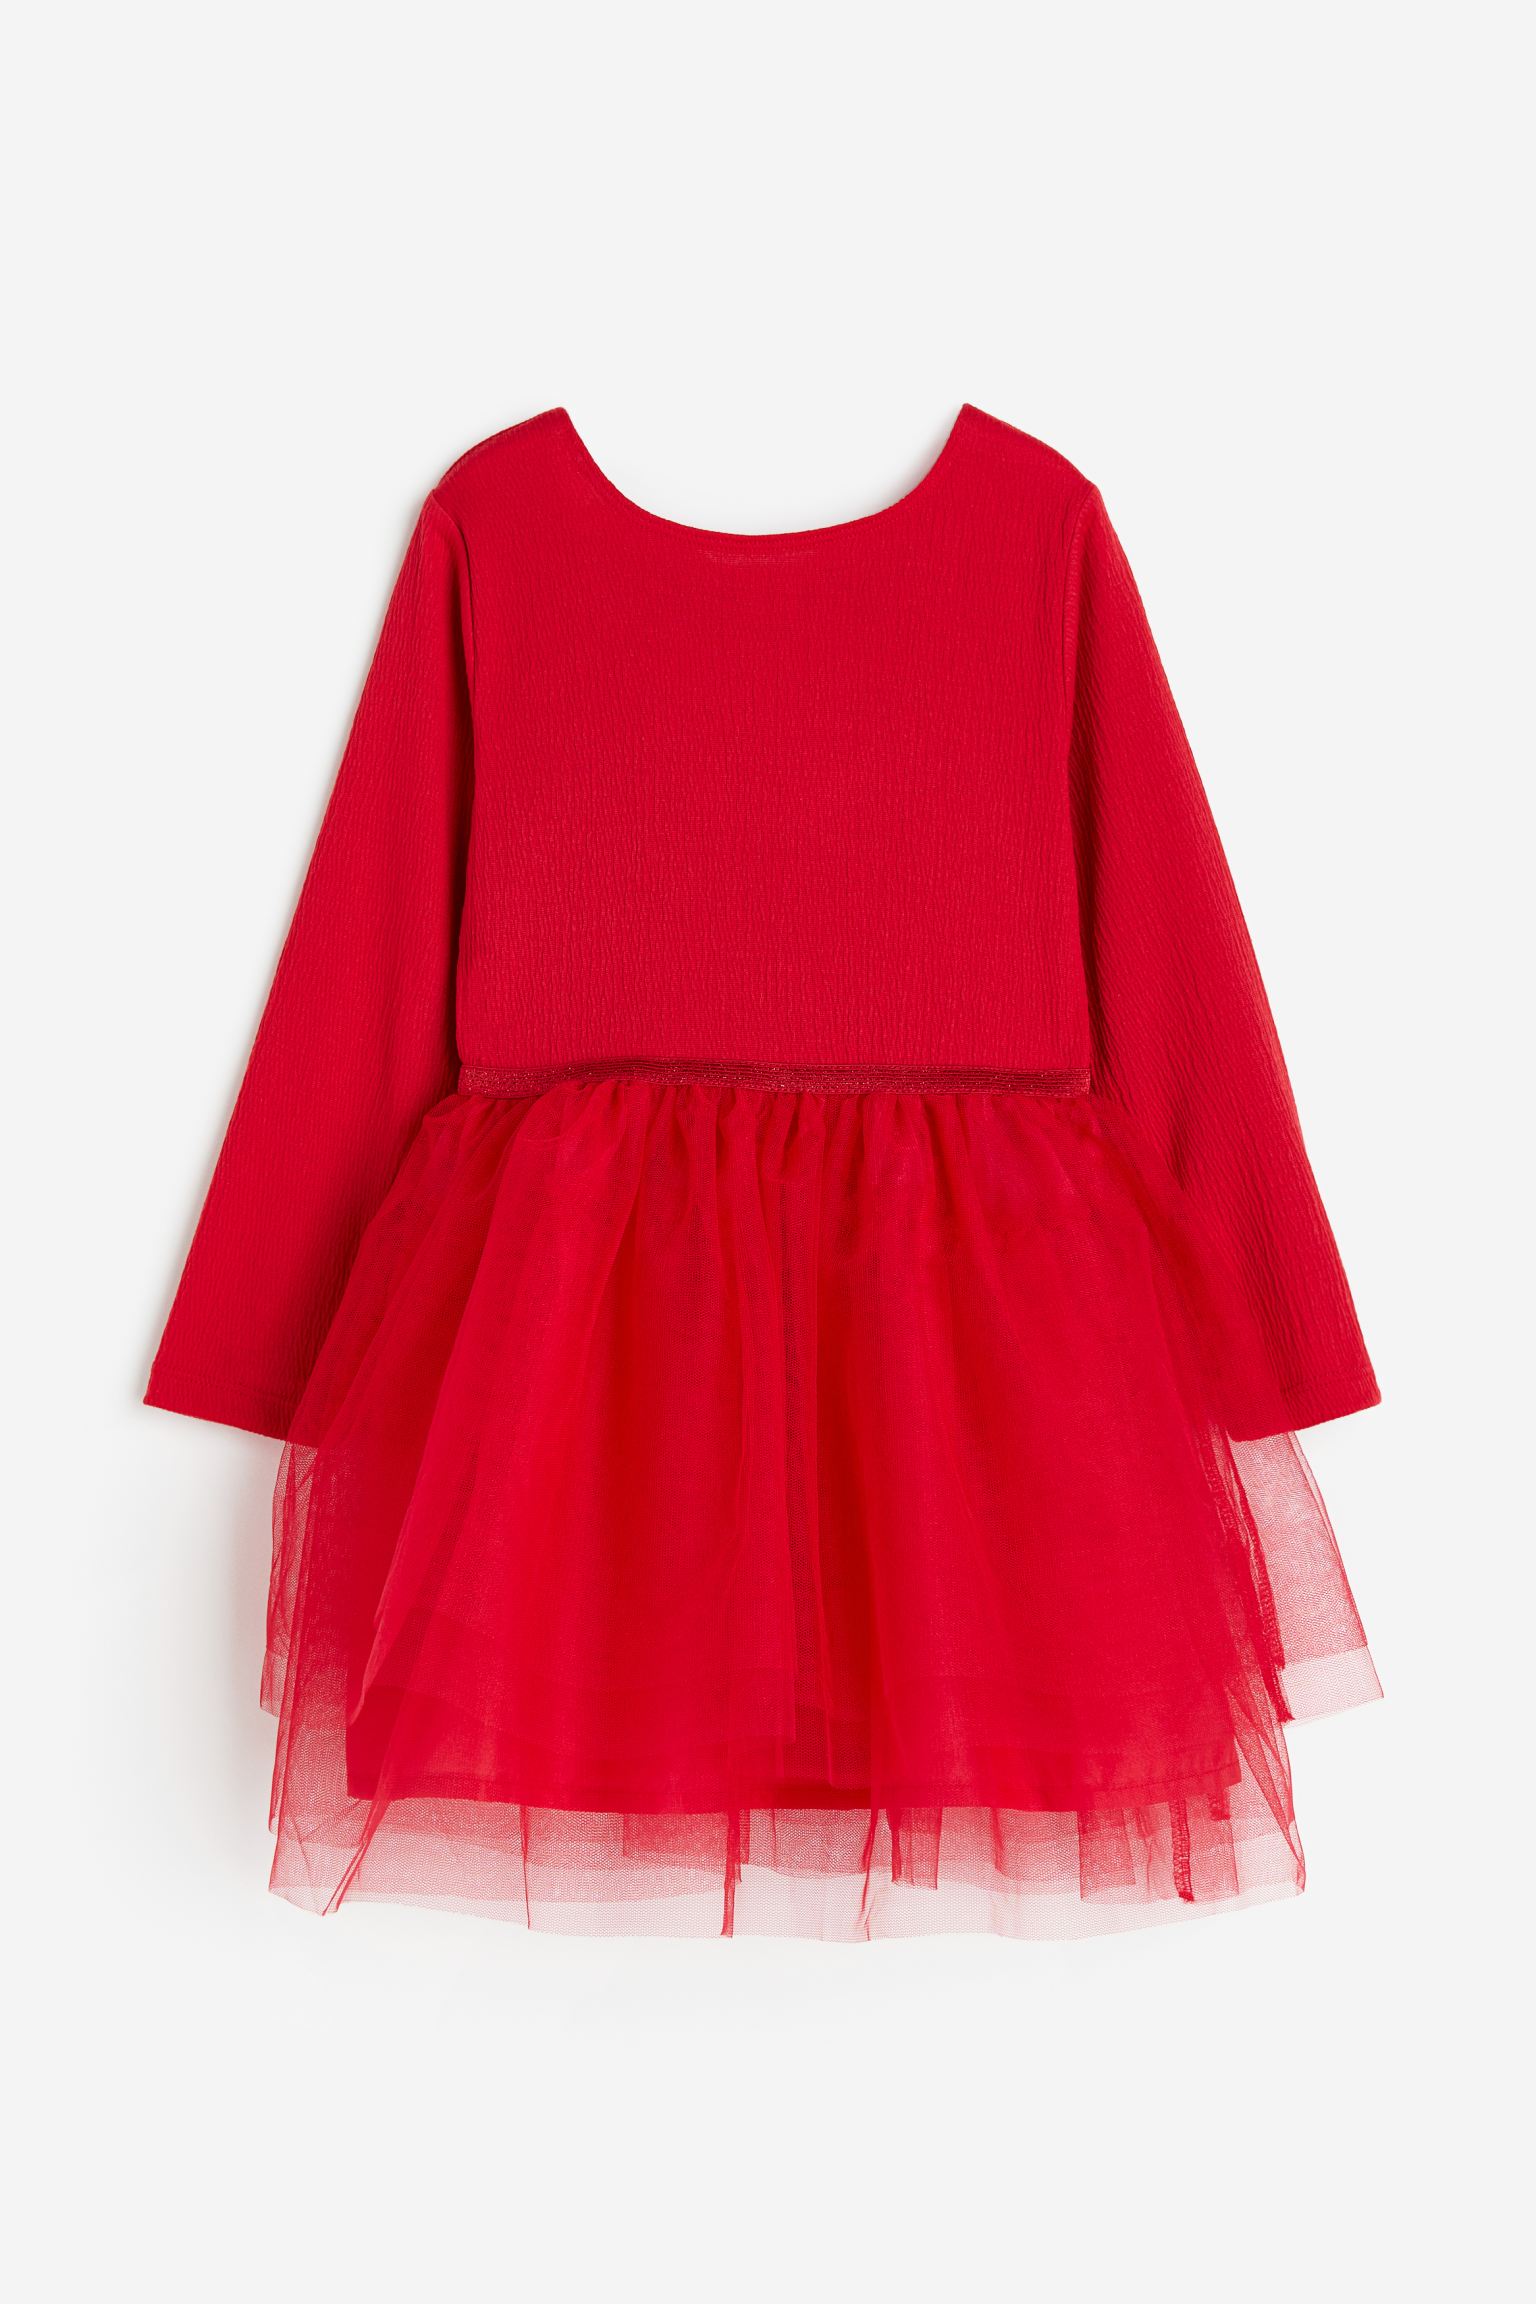 Платье H&M Tulle, красный юбка футляр длинная из блестящего трикотажа